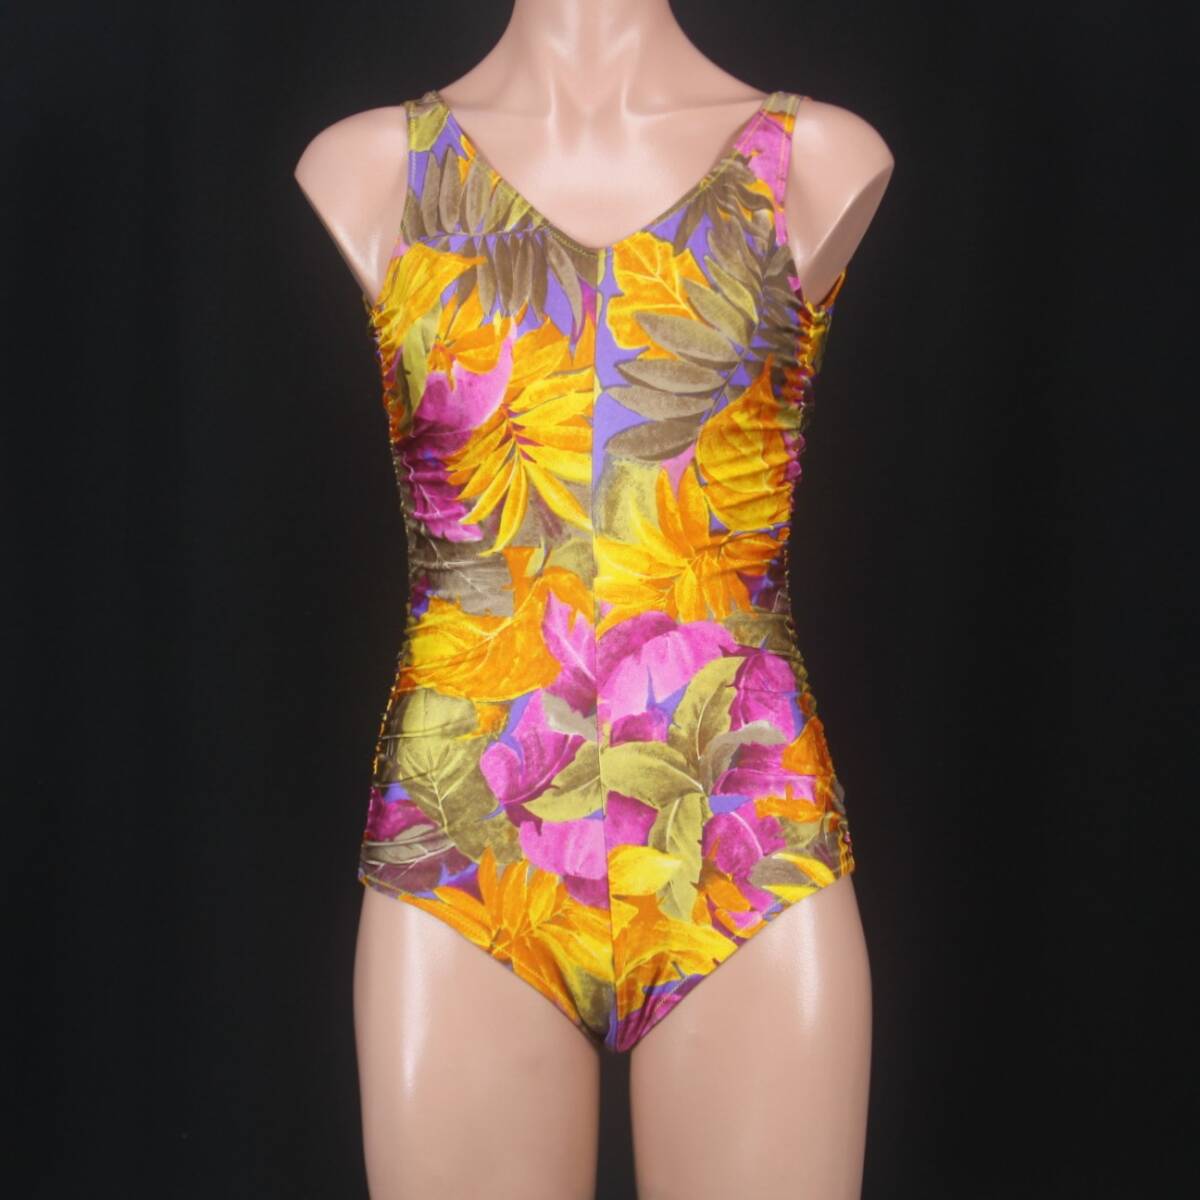 C0487*1 иен ~ есть перевод женский купальный костюм resort рисунок orange фиолетовый лиловый модный 11 размер gya The -.... One-piece море костюмы 